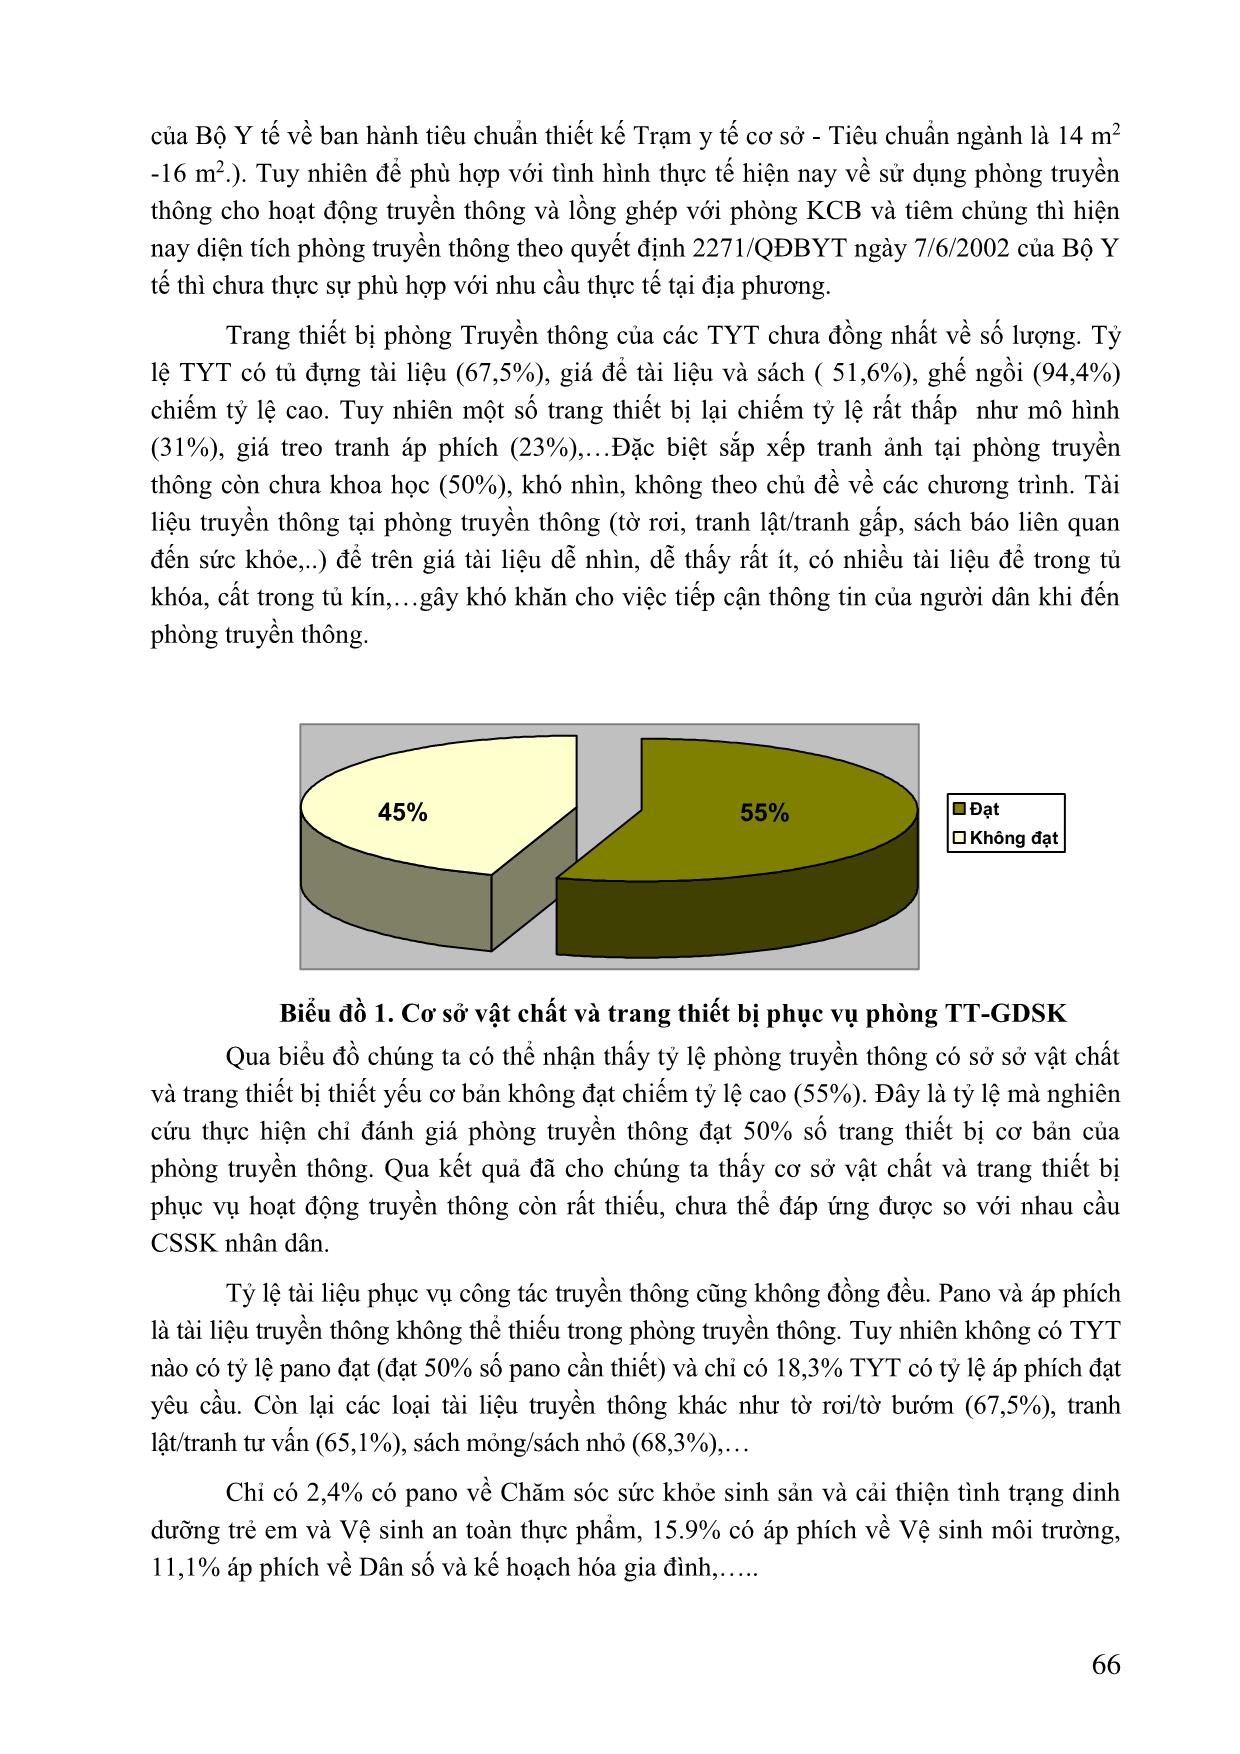 Đánh giá thực trạng và những yếu tố liên quan đến hoạt động phòng truyền thông giáo dục sức khỏe các trạm y tế tỉnh Bắc Ninh, năm 2011 trang 4